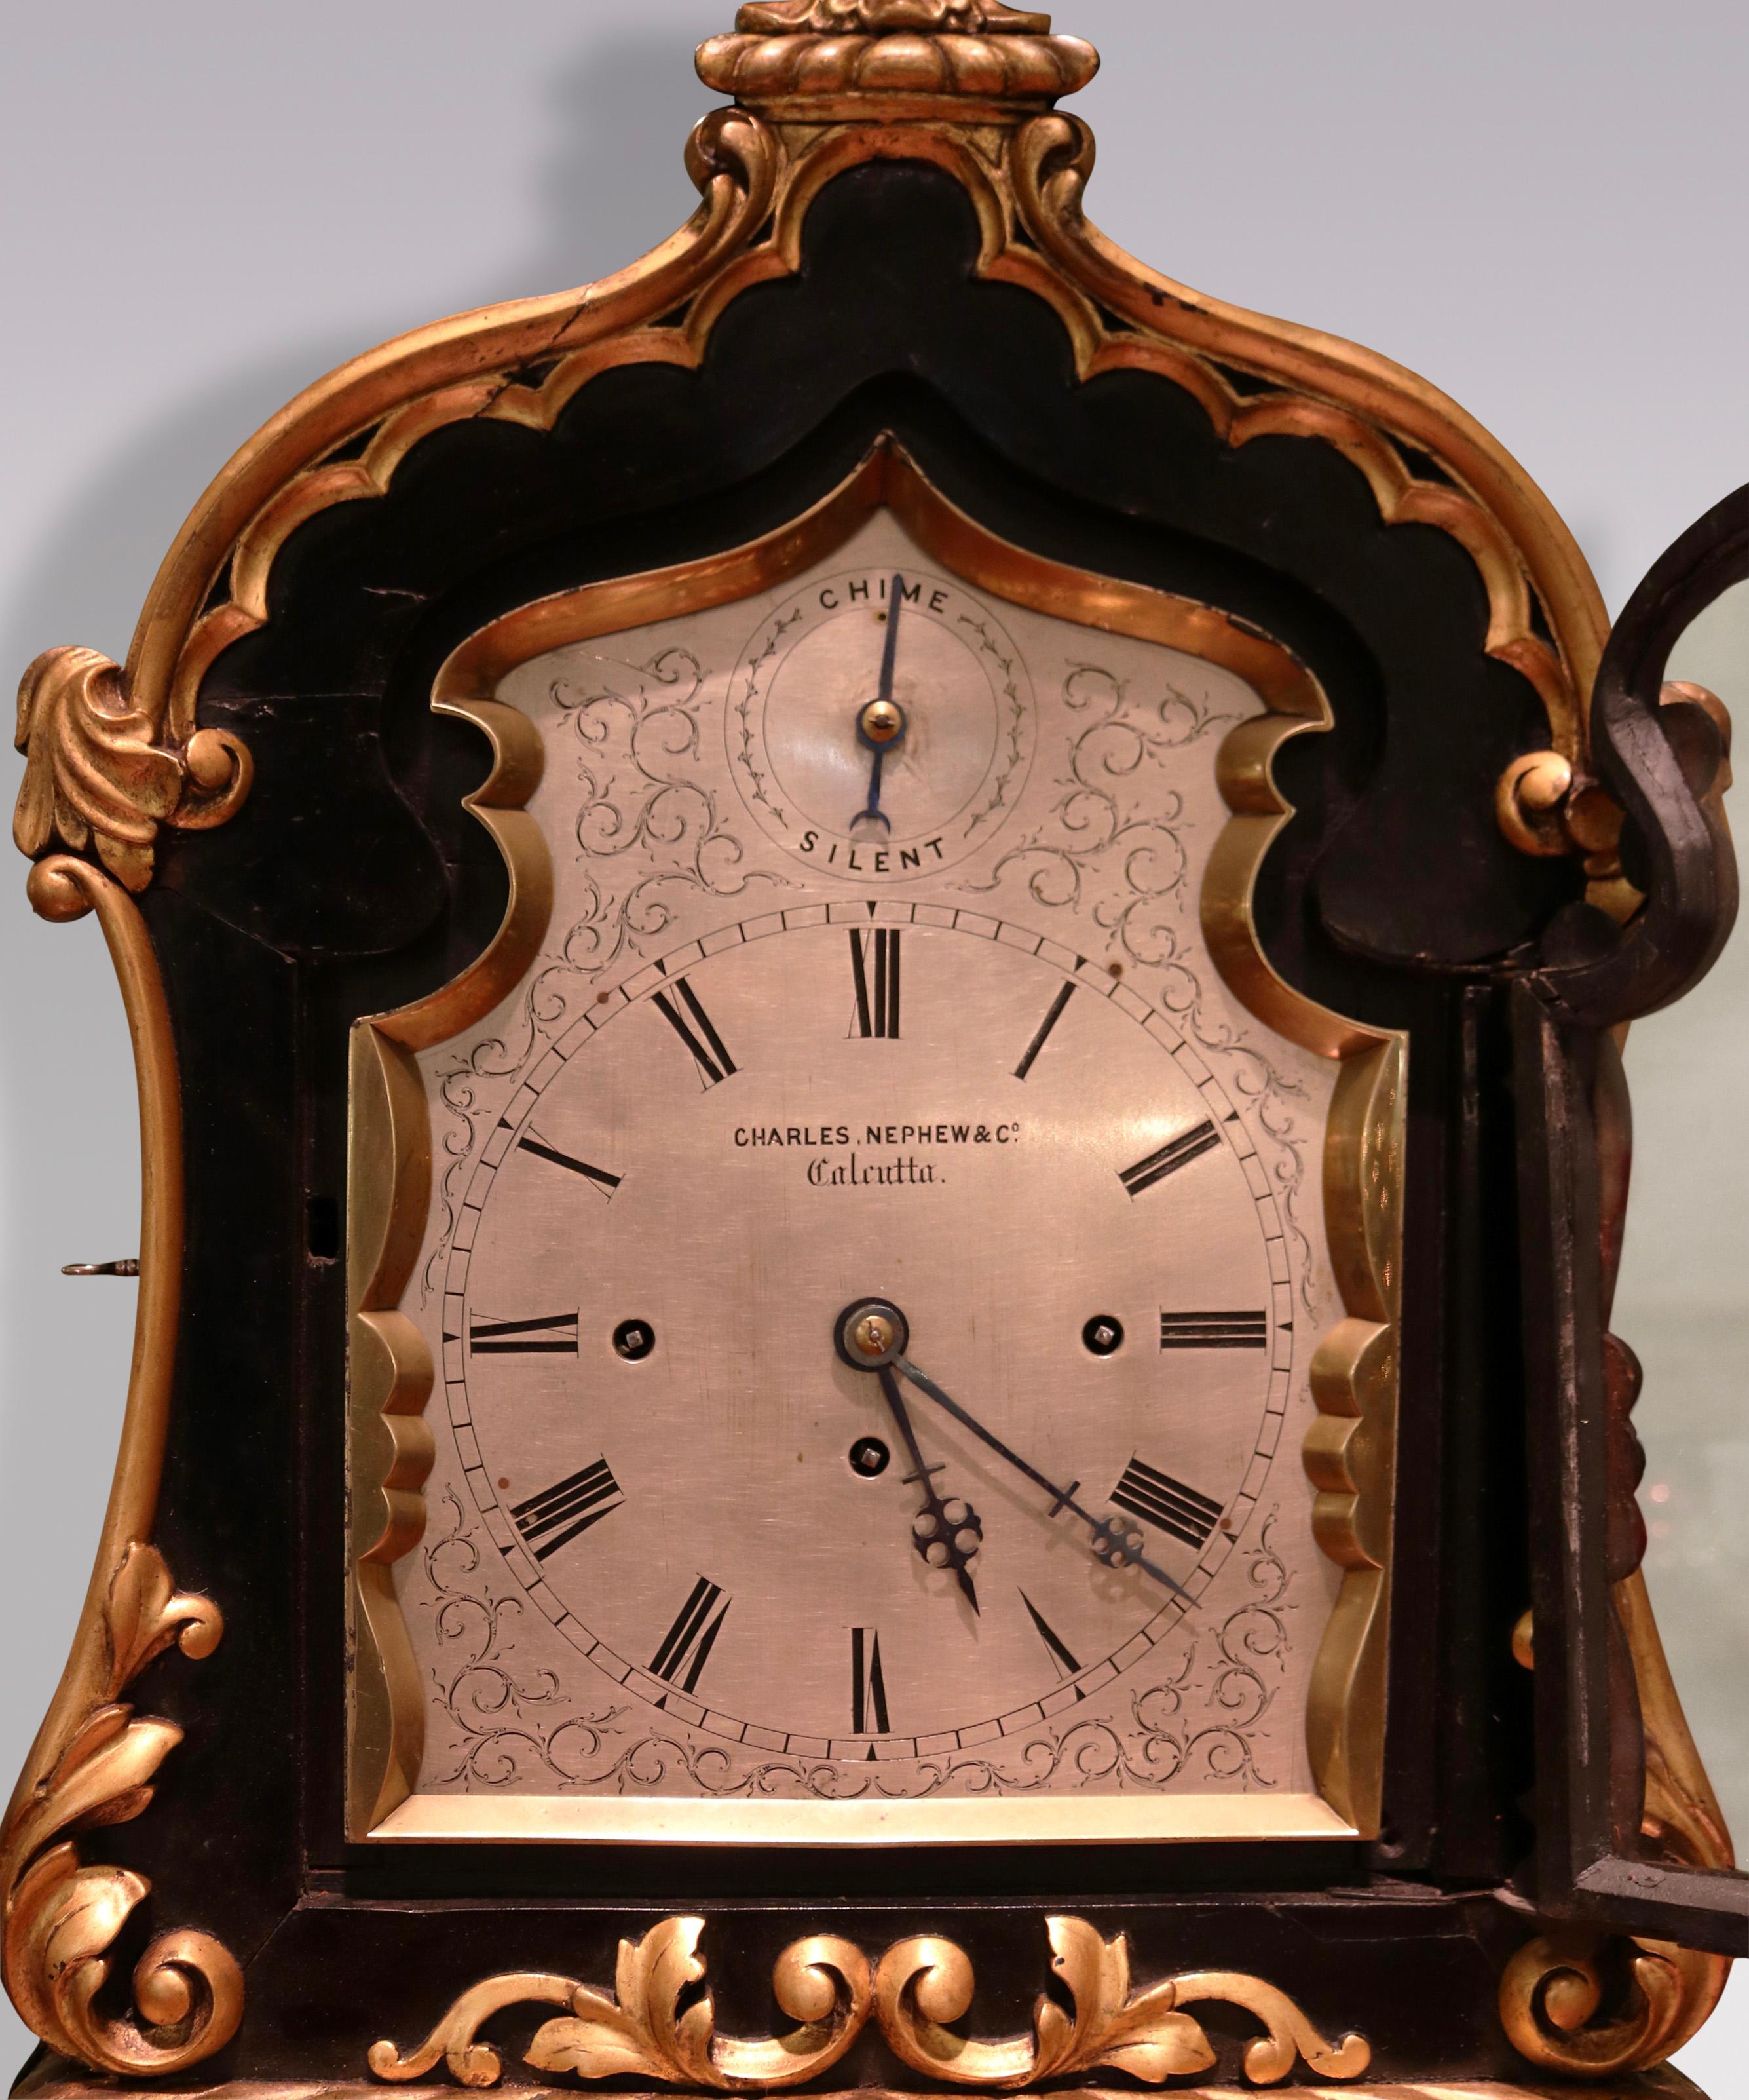 Une rare horloge à support du milieu du 19ème siècle, aux proportions inhabituelles, avec un cadran argenté et un mouvement à répétition de 8 jours, sonnant sur des cloches et un gong, par Charles. Nephew & Co, Calcutta.  L'horloge est logée dans un